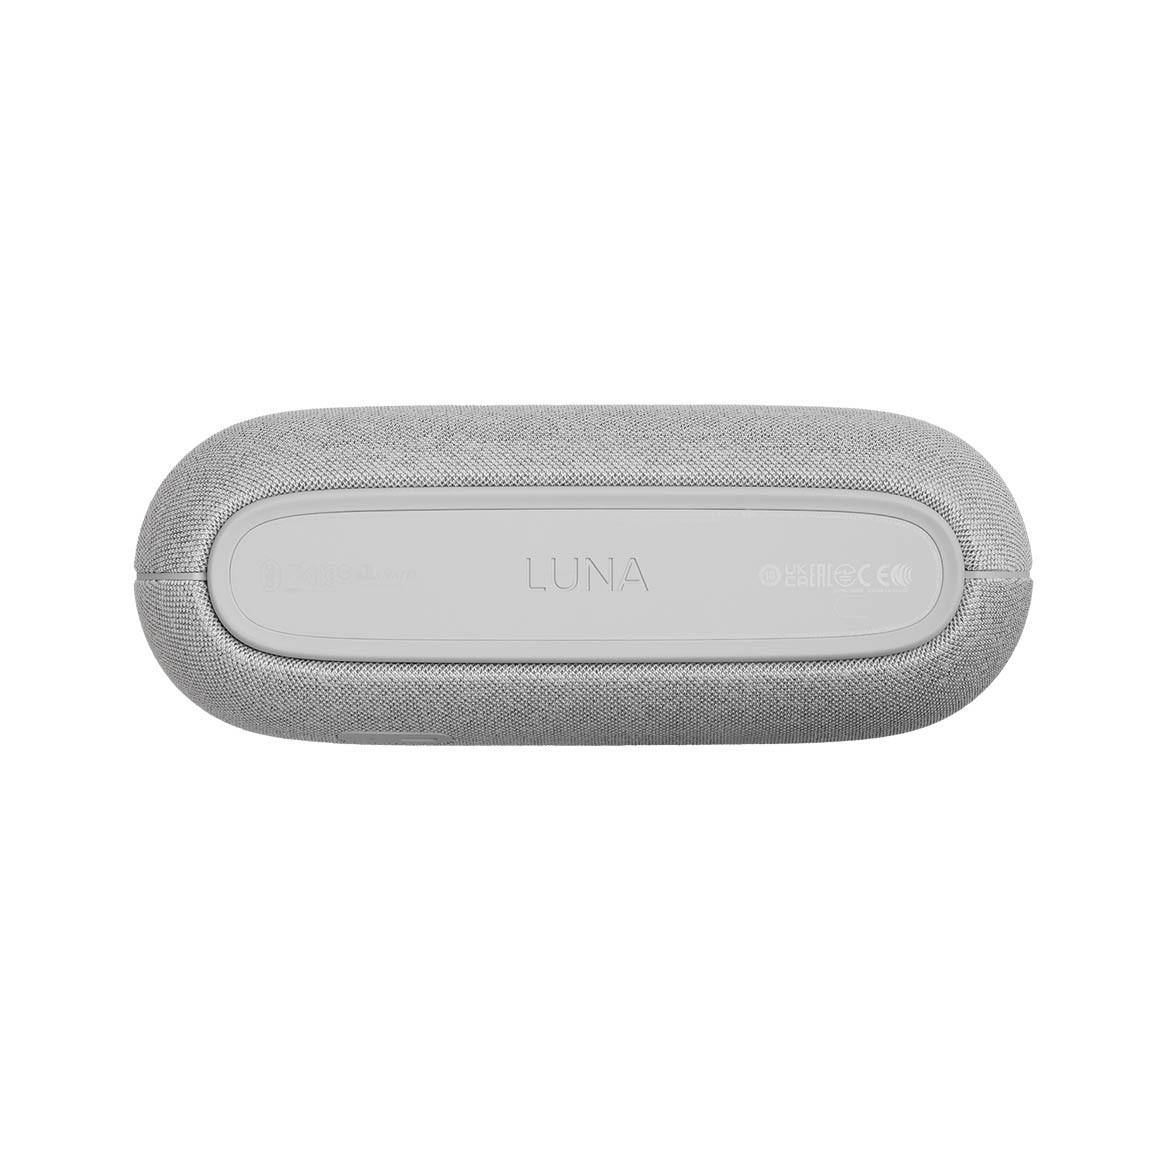 Harman Kardon Luna - Tragbarer Bluetooth Lautsprecher - Weiß_unterseite